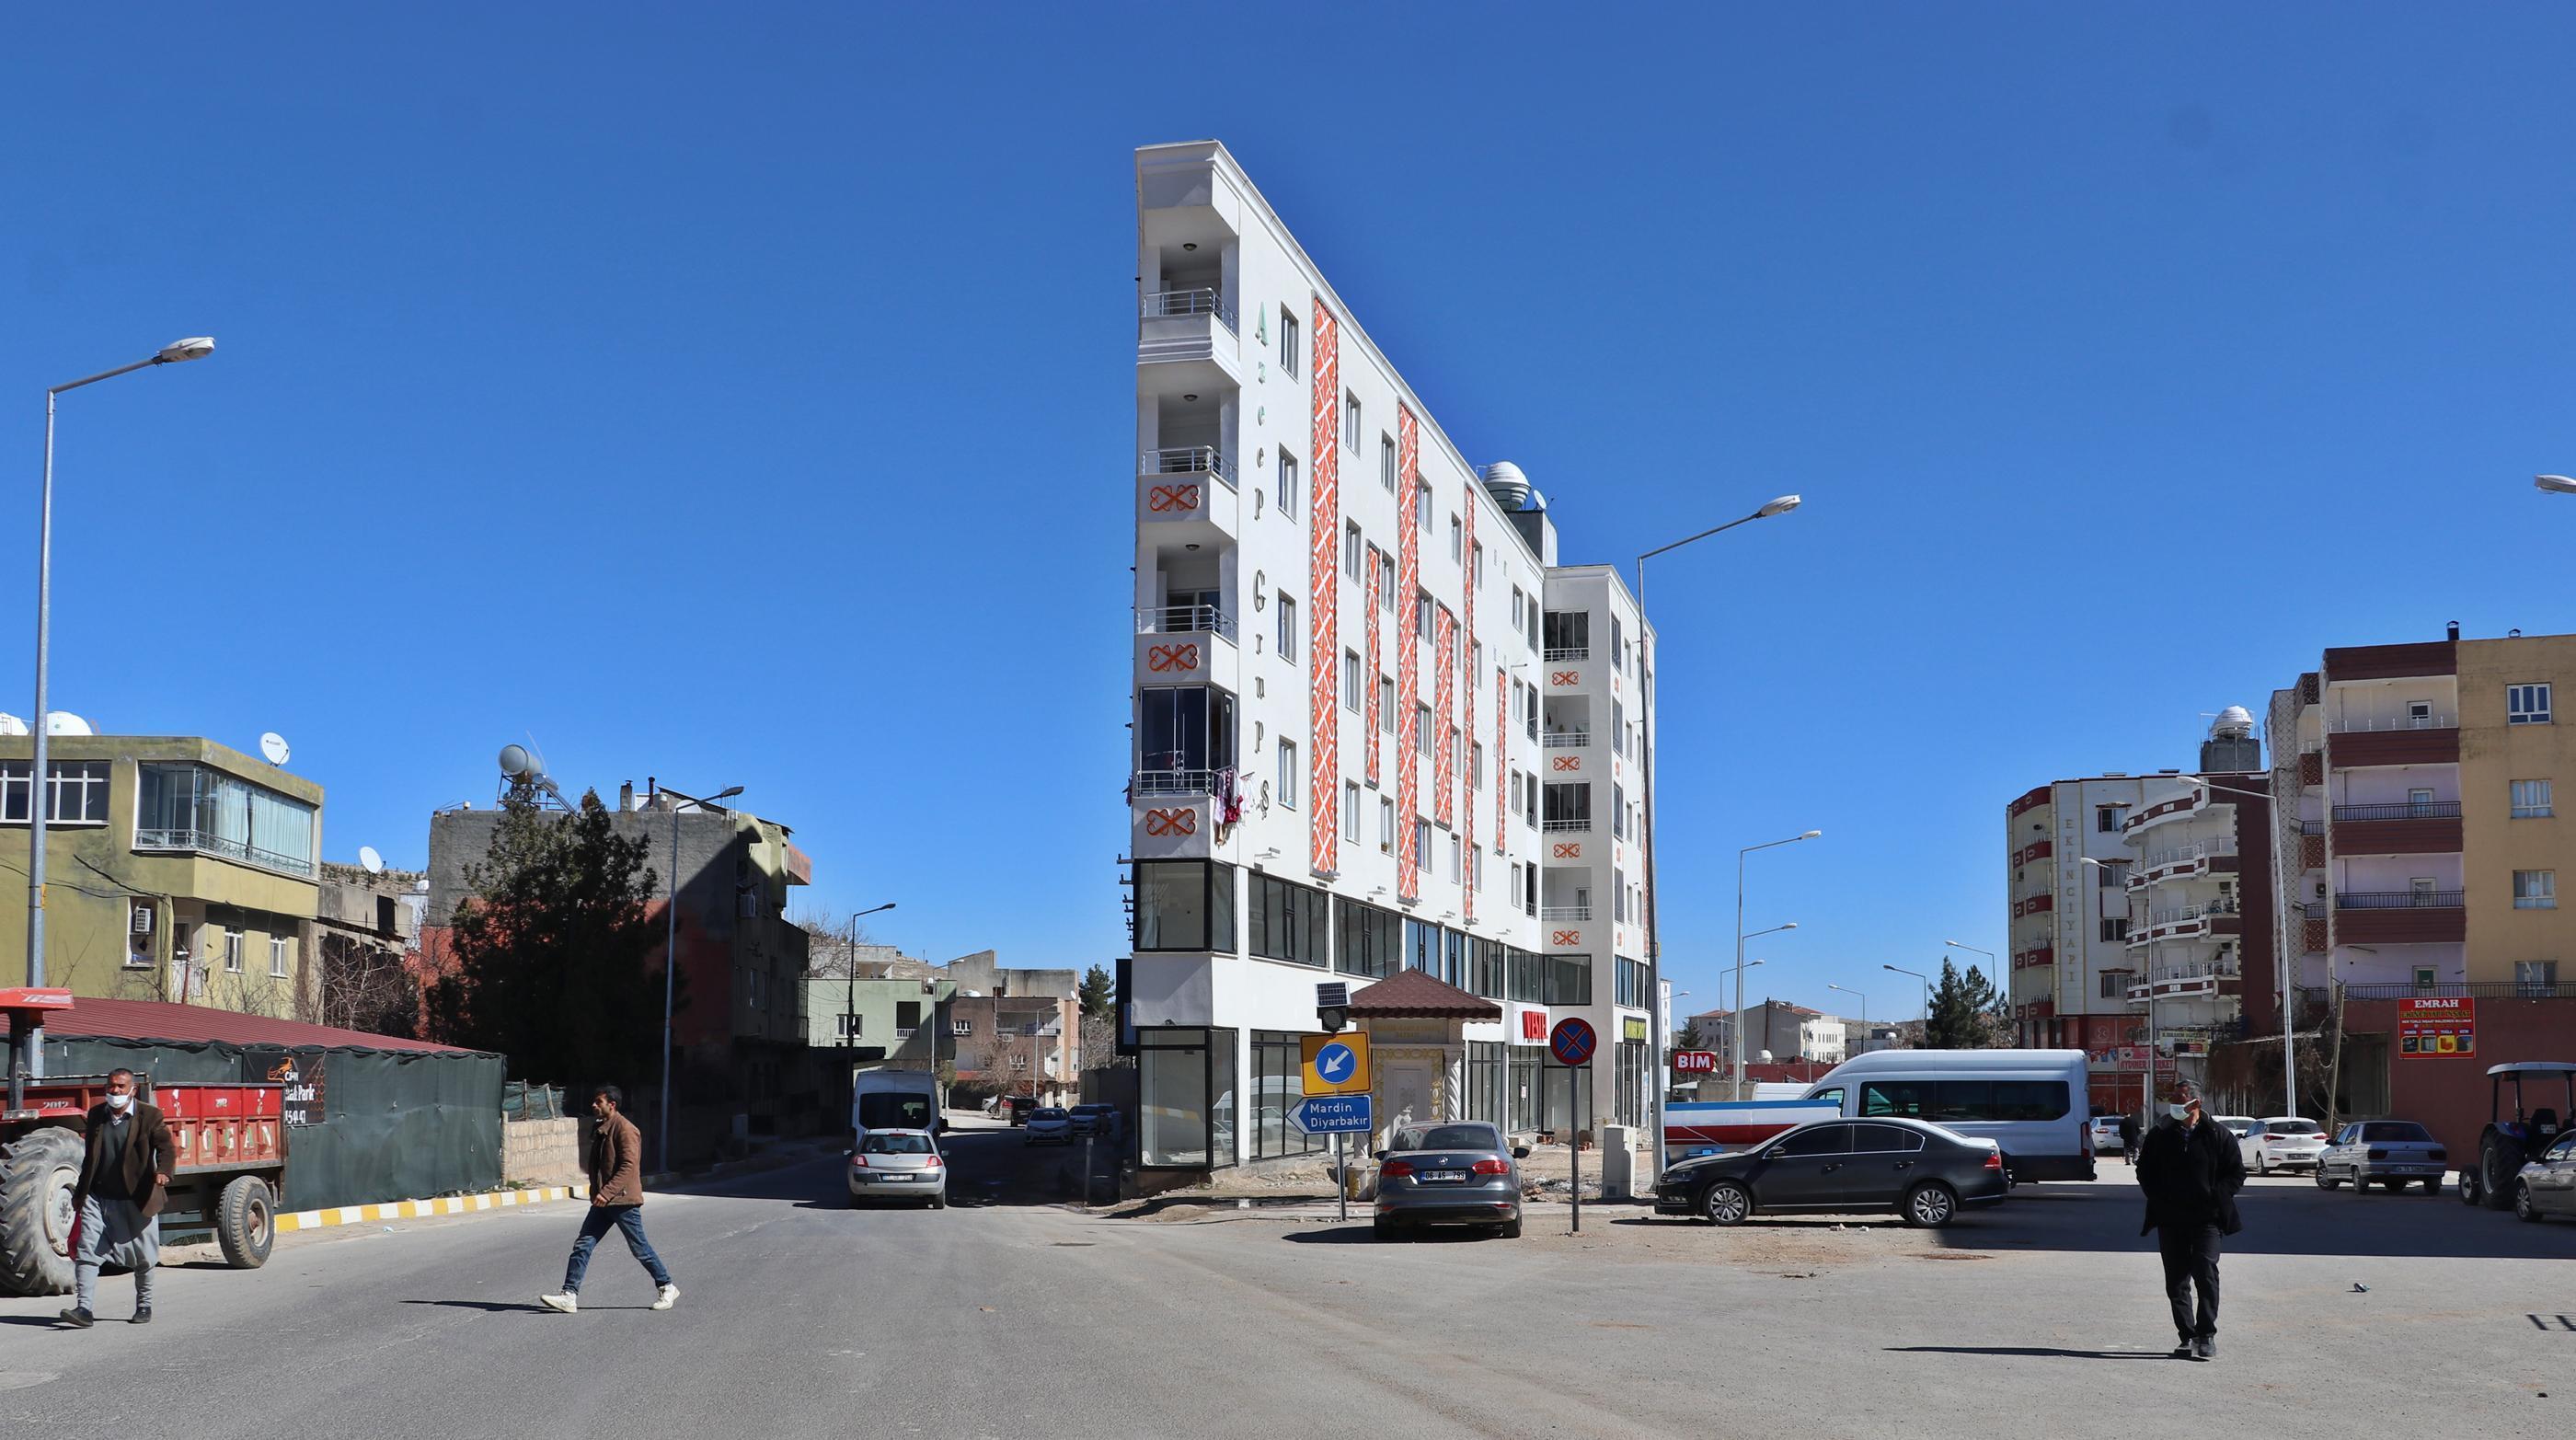 Görüntü Türkiyeden Binayı görenler önünde fotoğraf çekiliyor